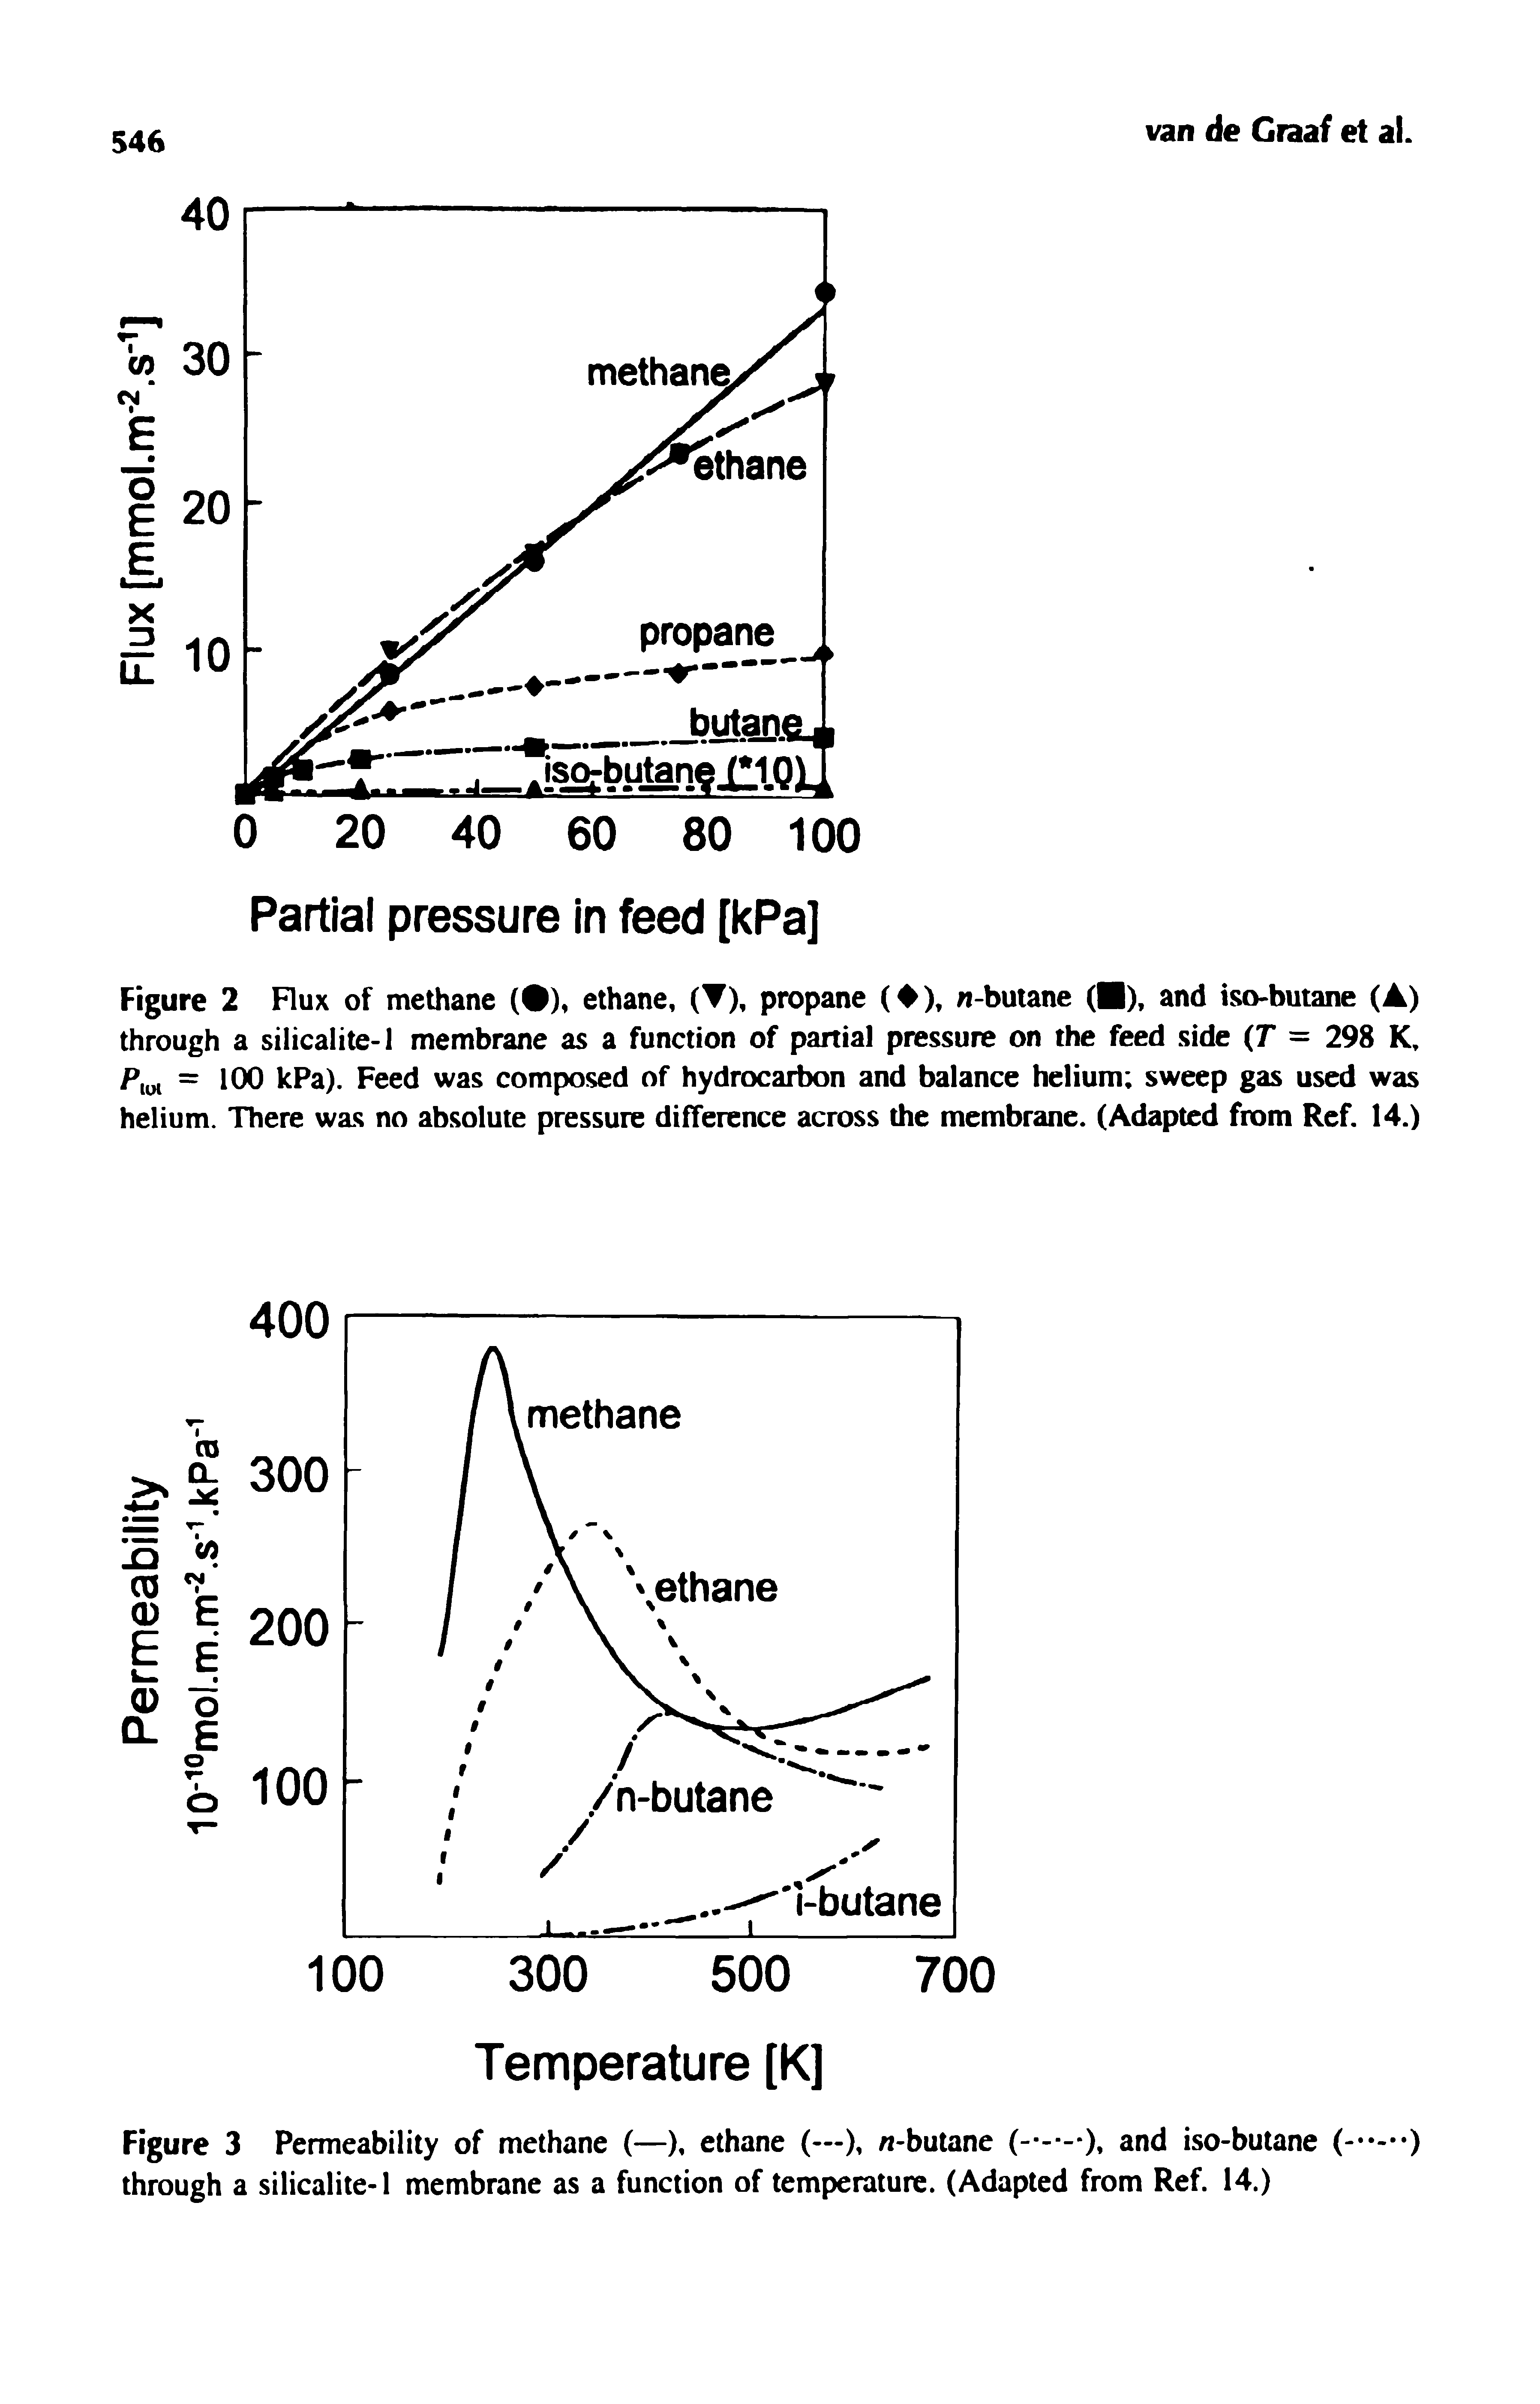 Figure 3 Permeability of methane (—), ethane (—), n-butane and iso-butane (-...